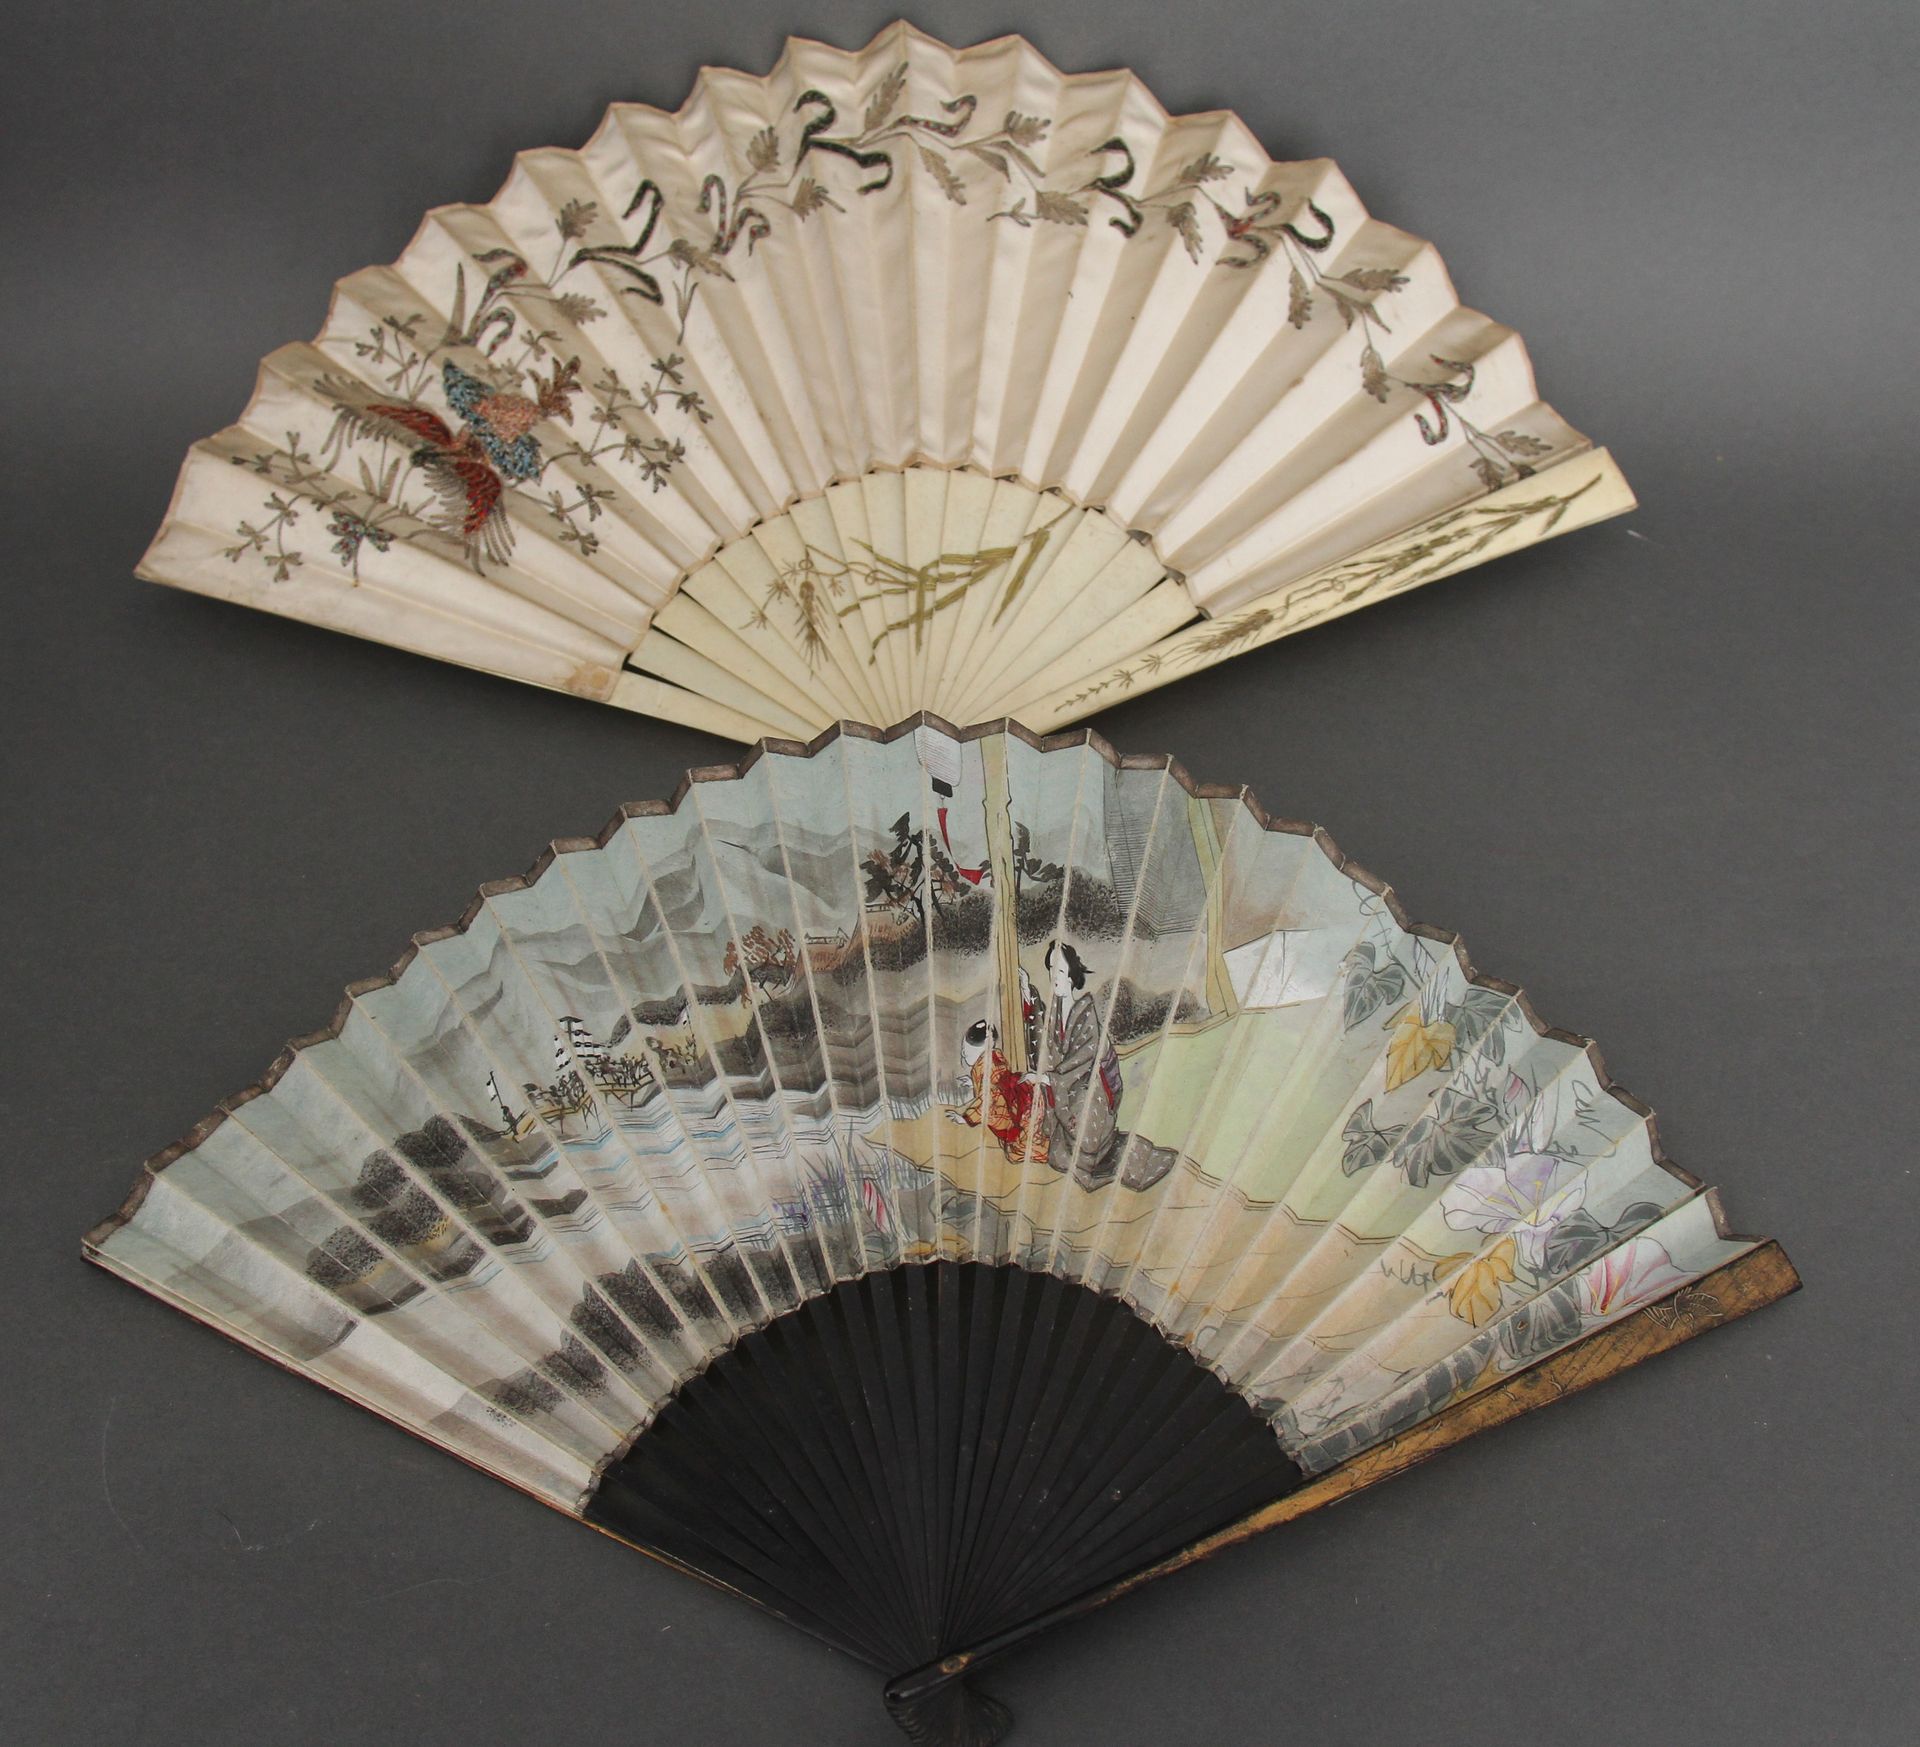 Null 地段:

- 黑漆镀金木扇，绘有离别场景的叶子，日本 19世纪(磨损)

- 鎏金装饰的骨扇，刺绣织物和金属链，带叶子装饰，19世纪（磨损）。